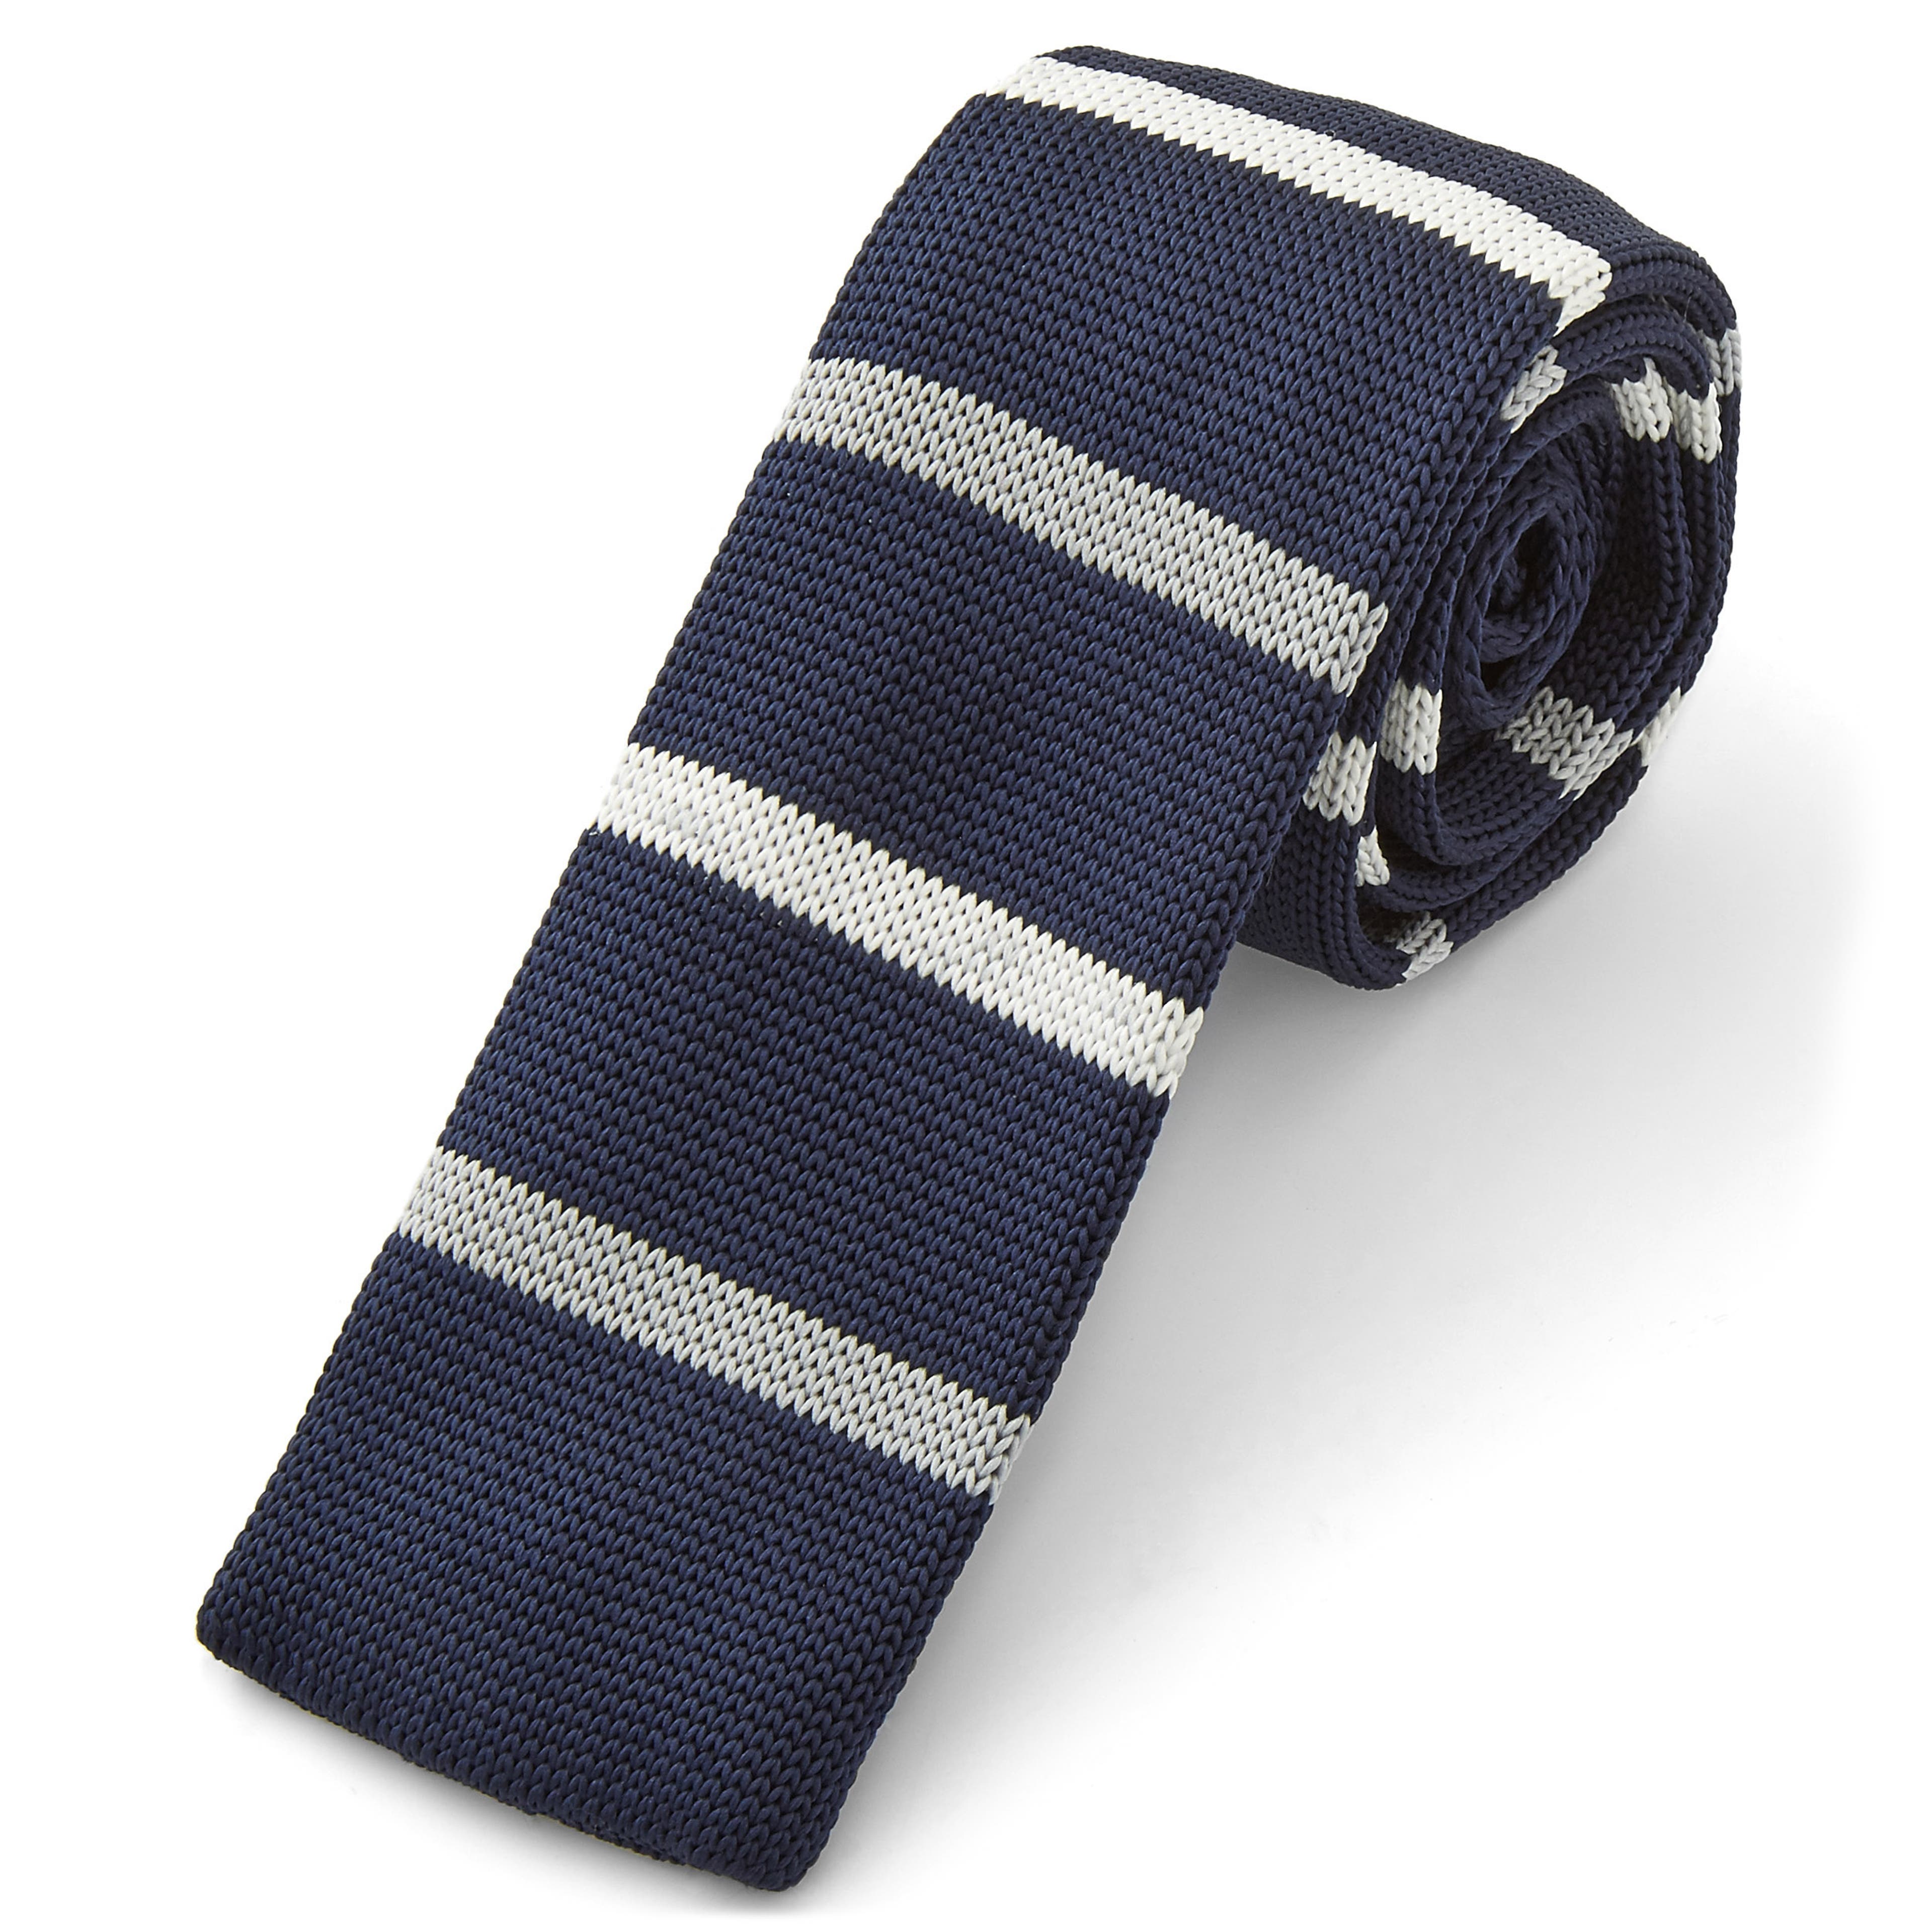 Pletená kravata Blue & White 